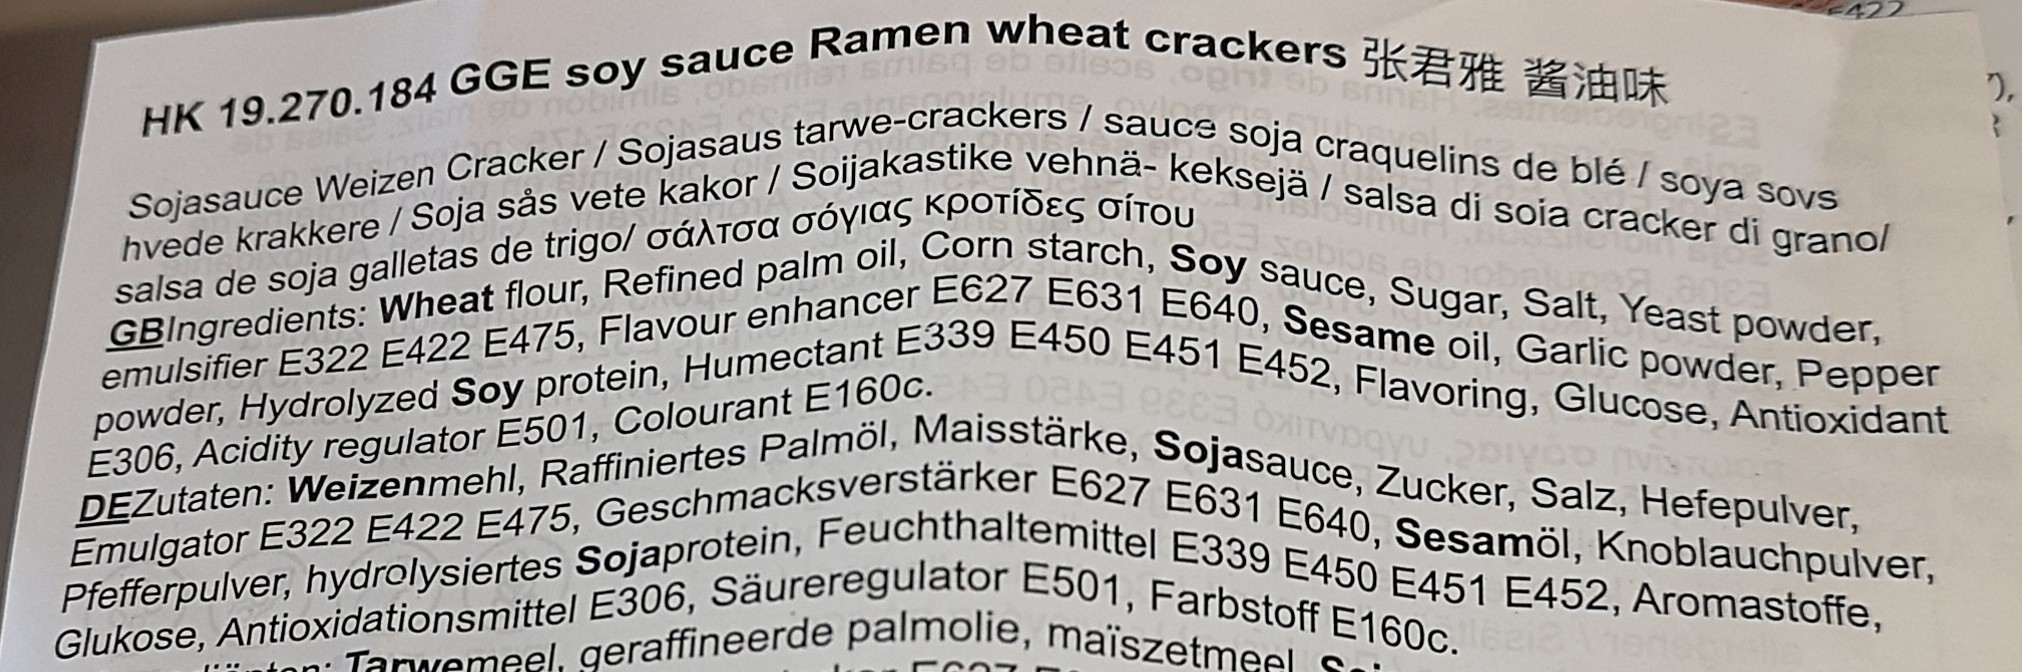 #2384: Wei Lih "GGE Wheat Crackers Soy Sauce Ramen"